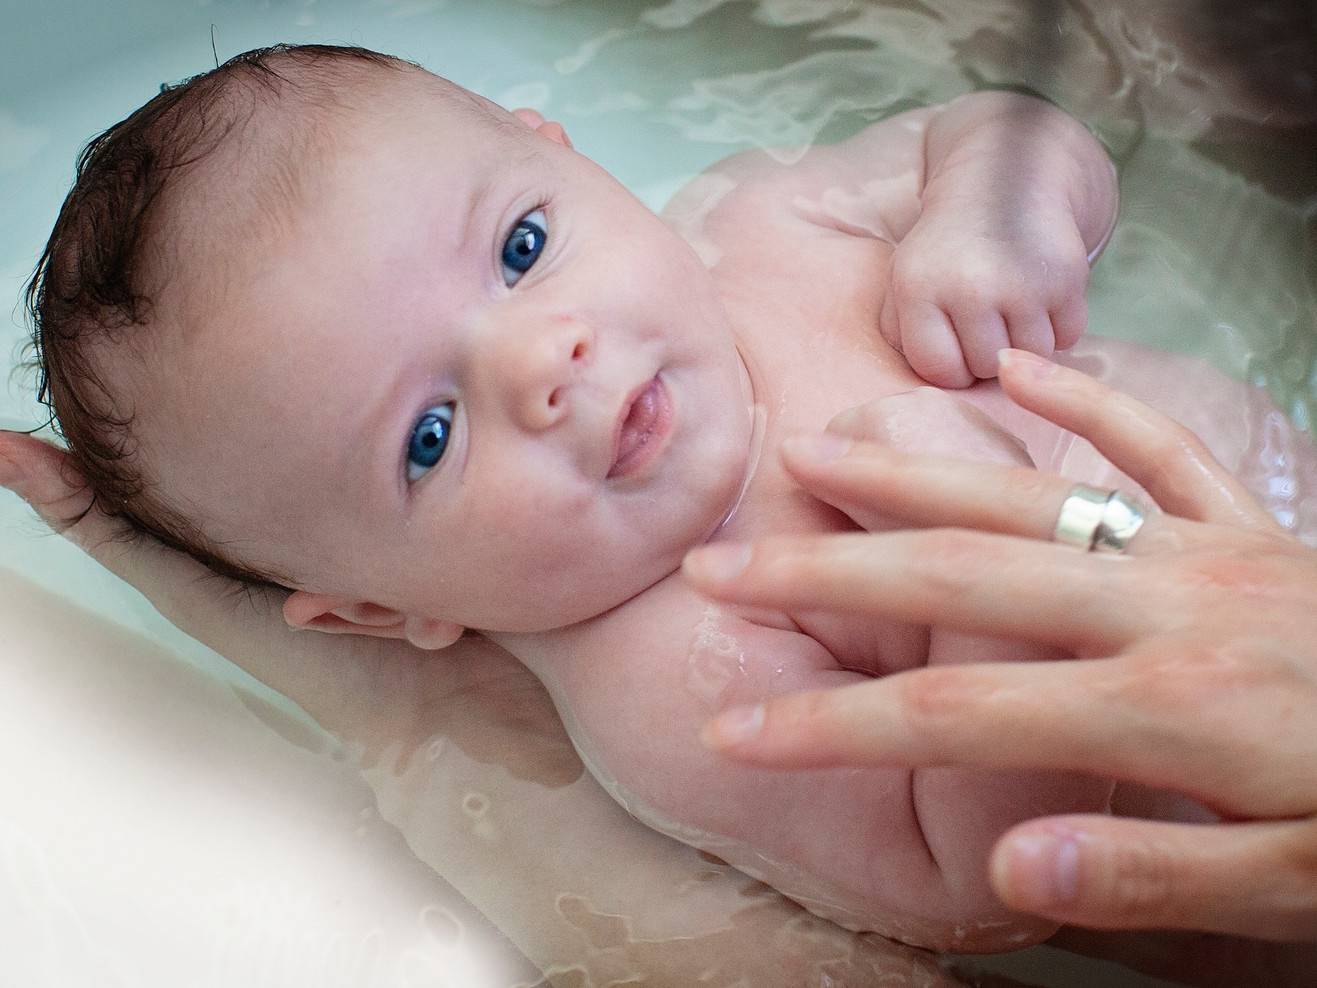 Вода в уши новорожденному при купании. Ушки у новорожденных при купании. Попала вода в ухо новорожденному при купании. Новорожденному в ушки попала вода. При купании новорожденного вода попадает